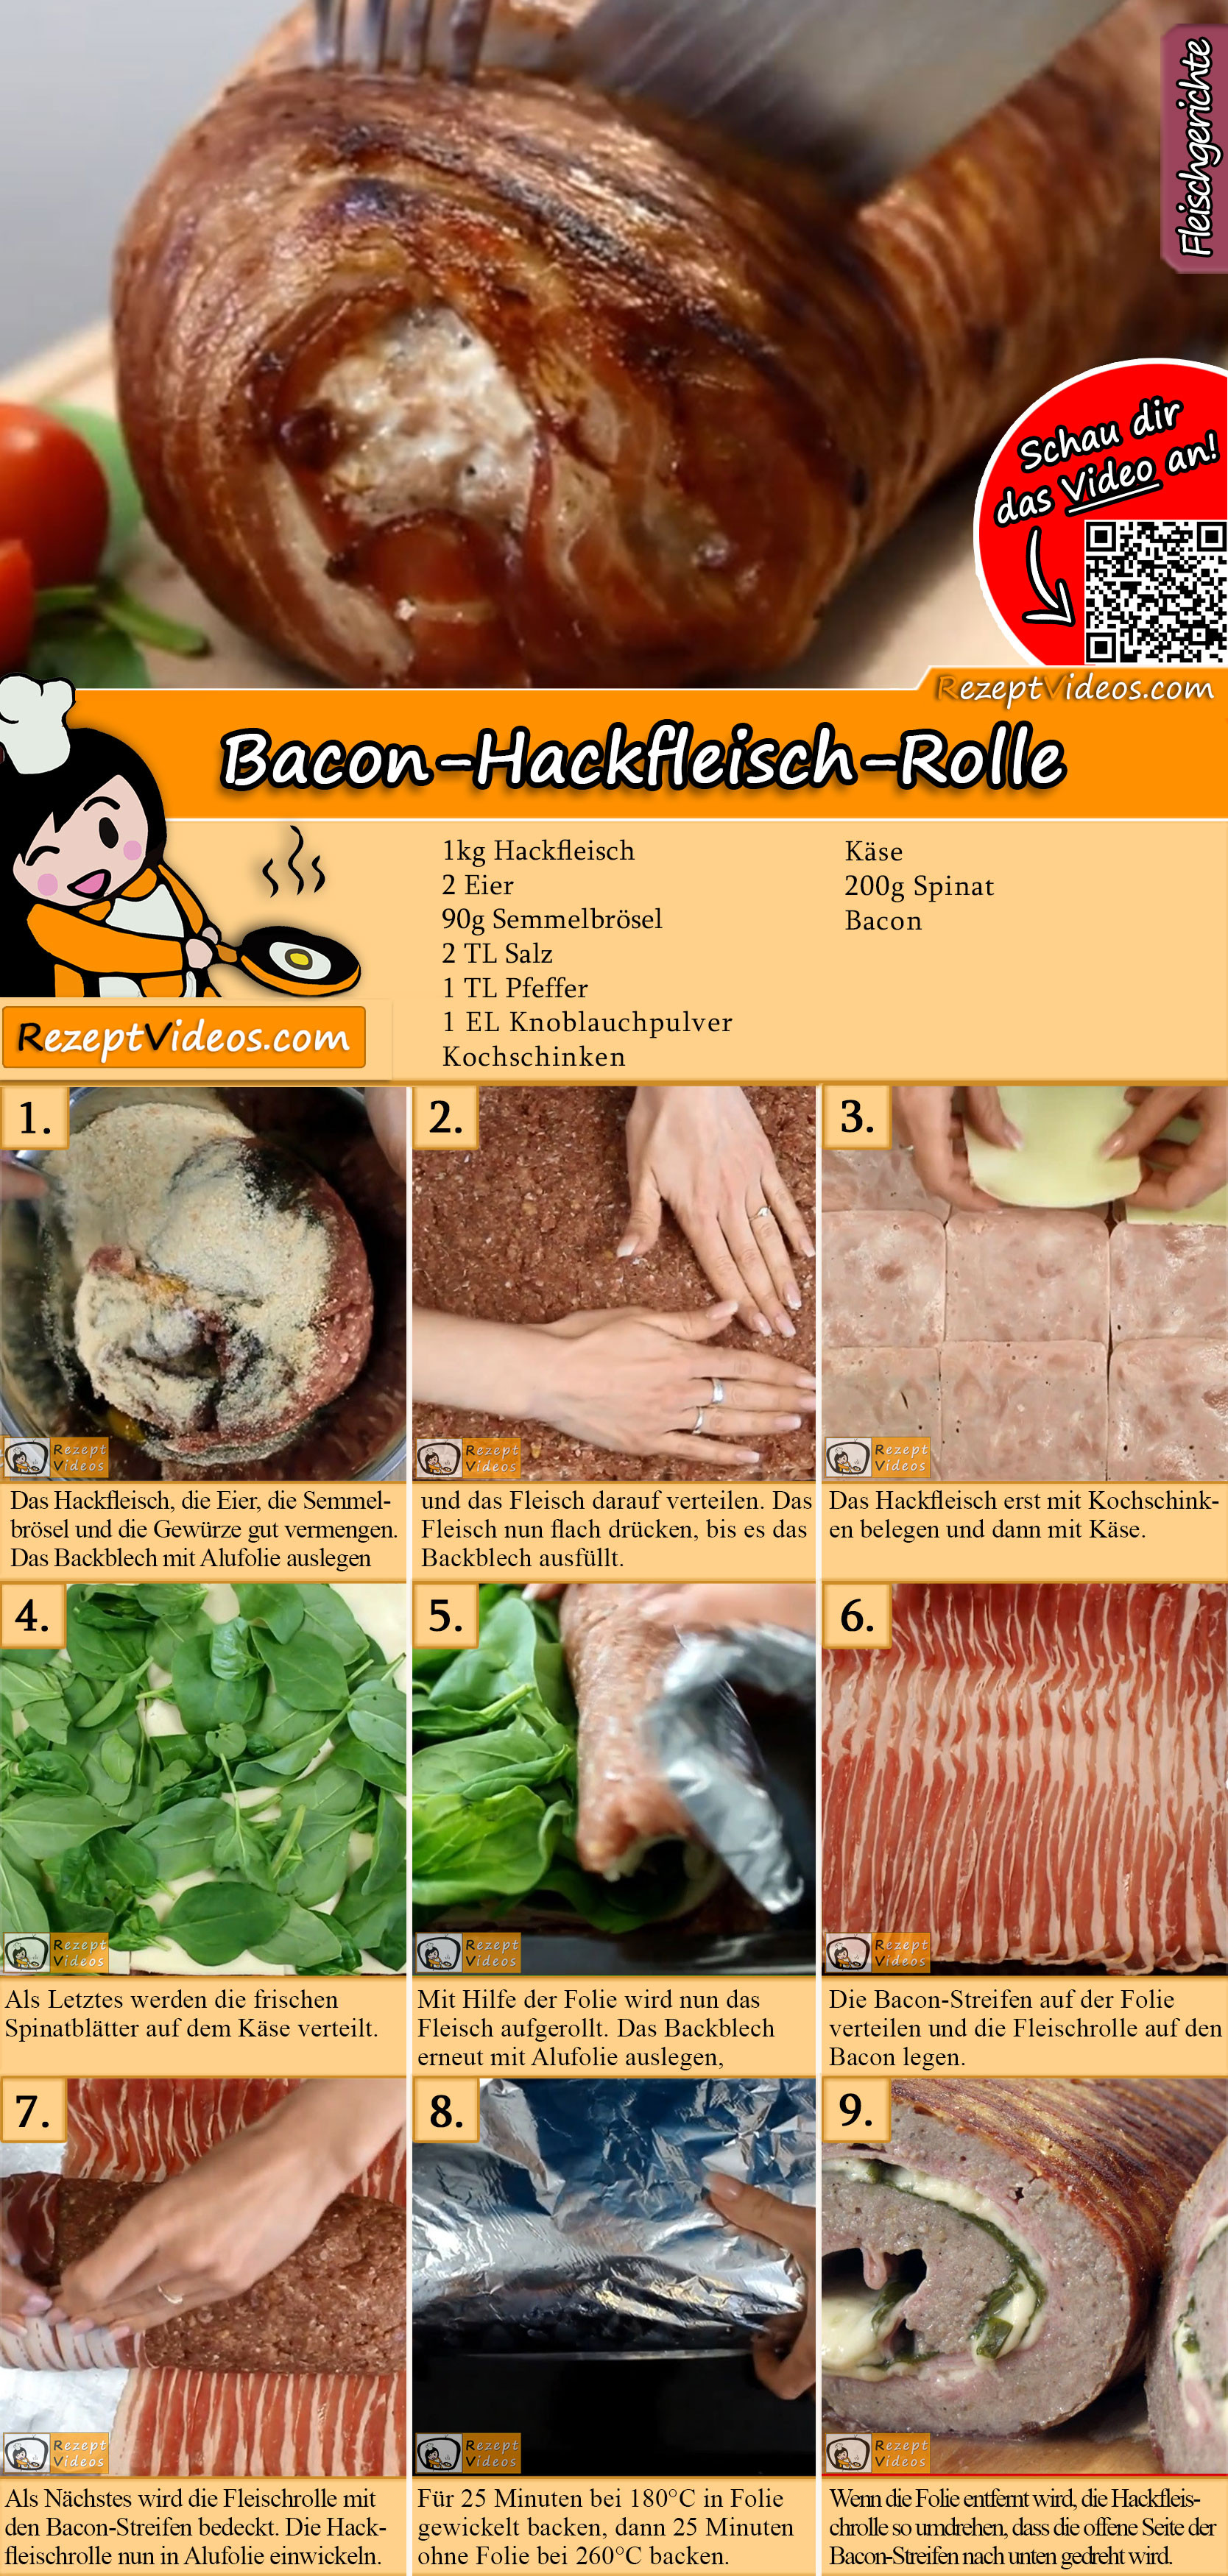 Bacon-Hackfleisch-Rolle Rezept mit Video